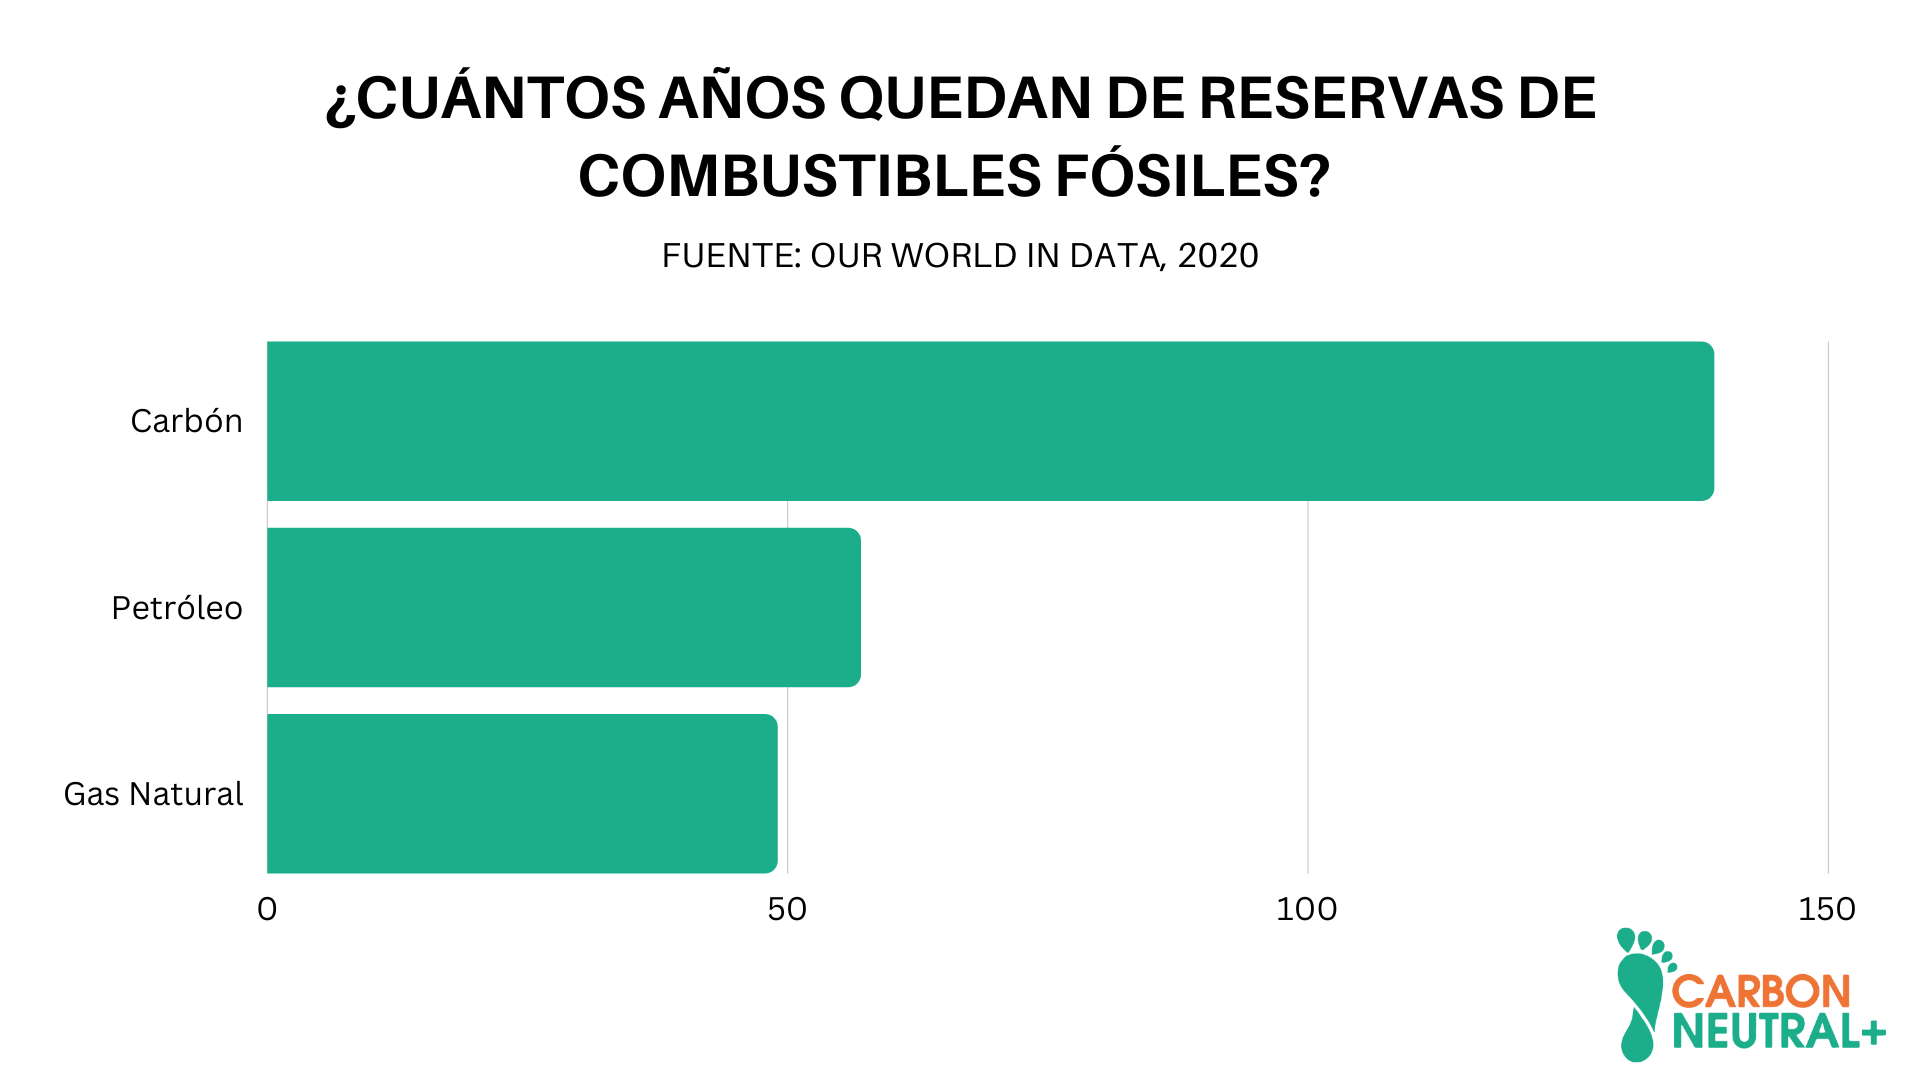 Imagen 1: Reservas que quedan de combustibles fósiles en cantidad de años, al 2020 (considerando únicamente los actuales yacimientos conocidos). Fuente: Our world in data. 